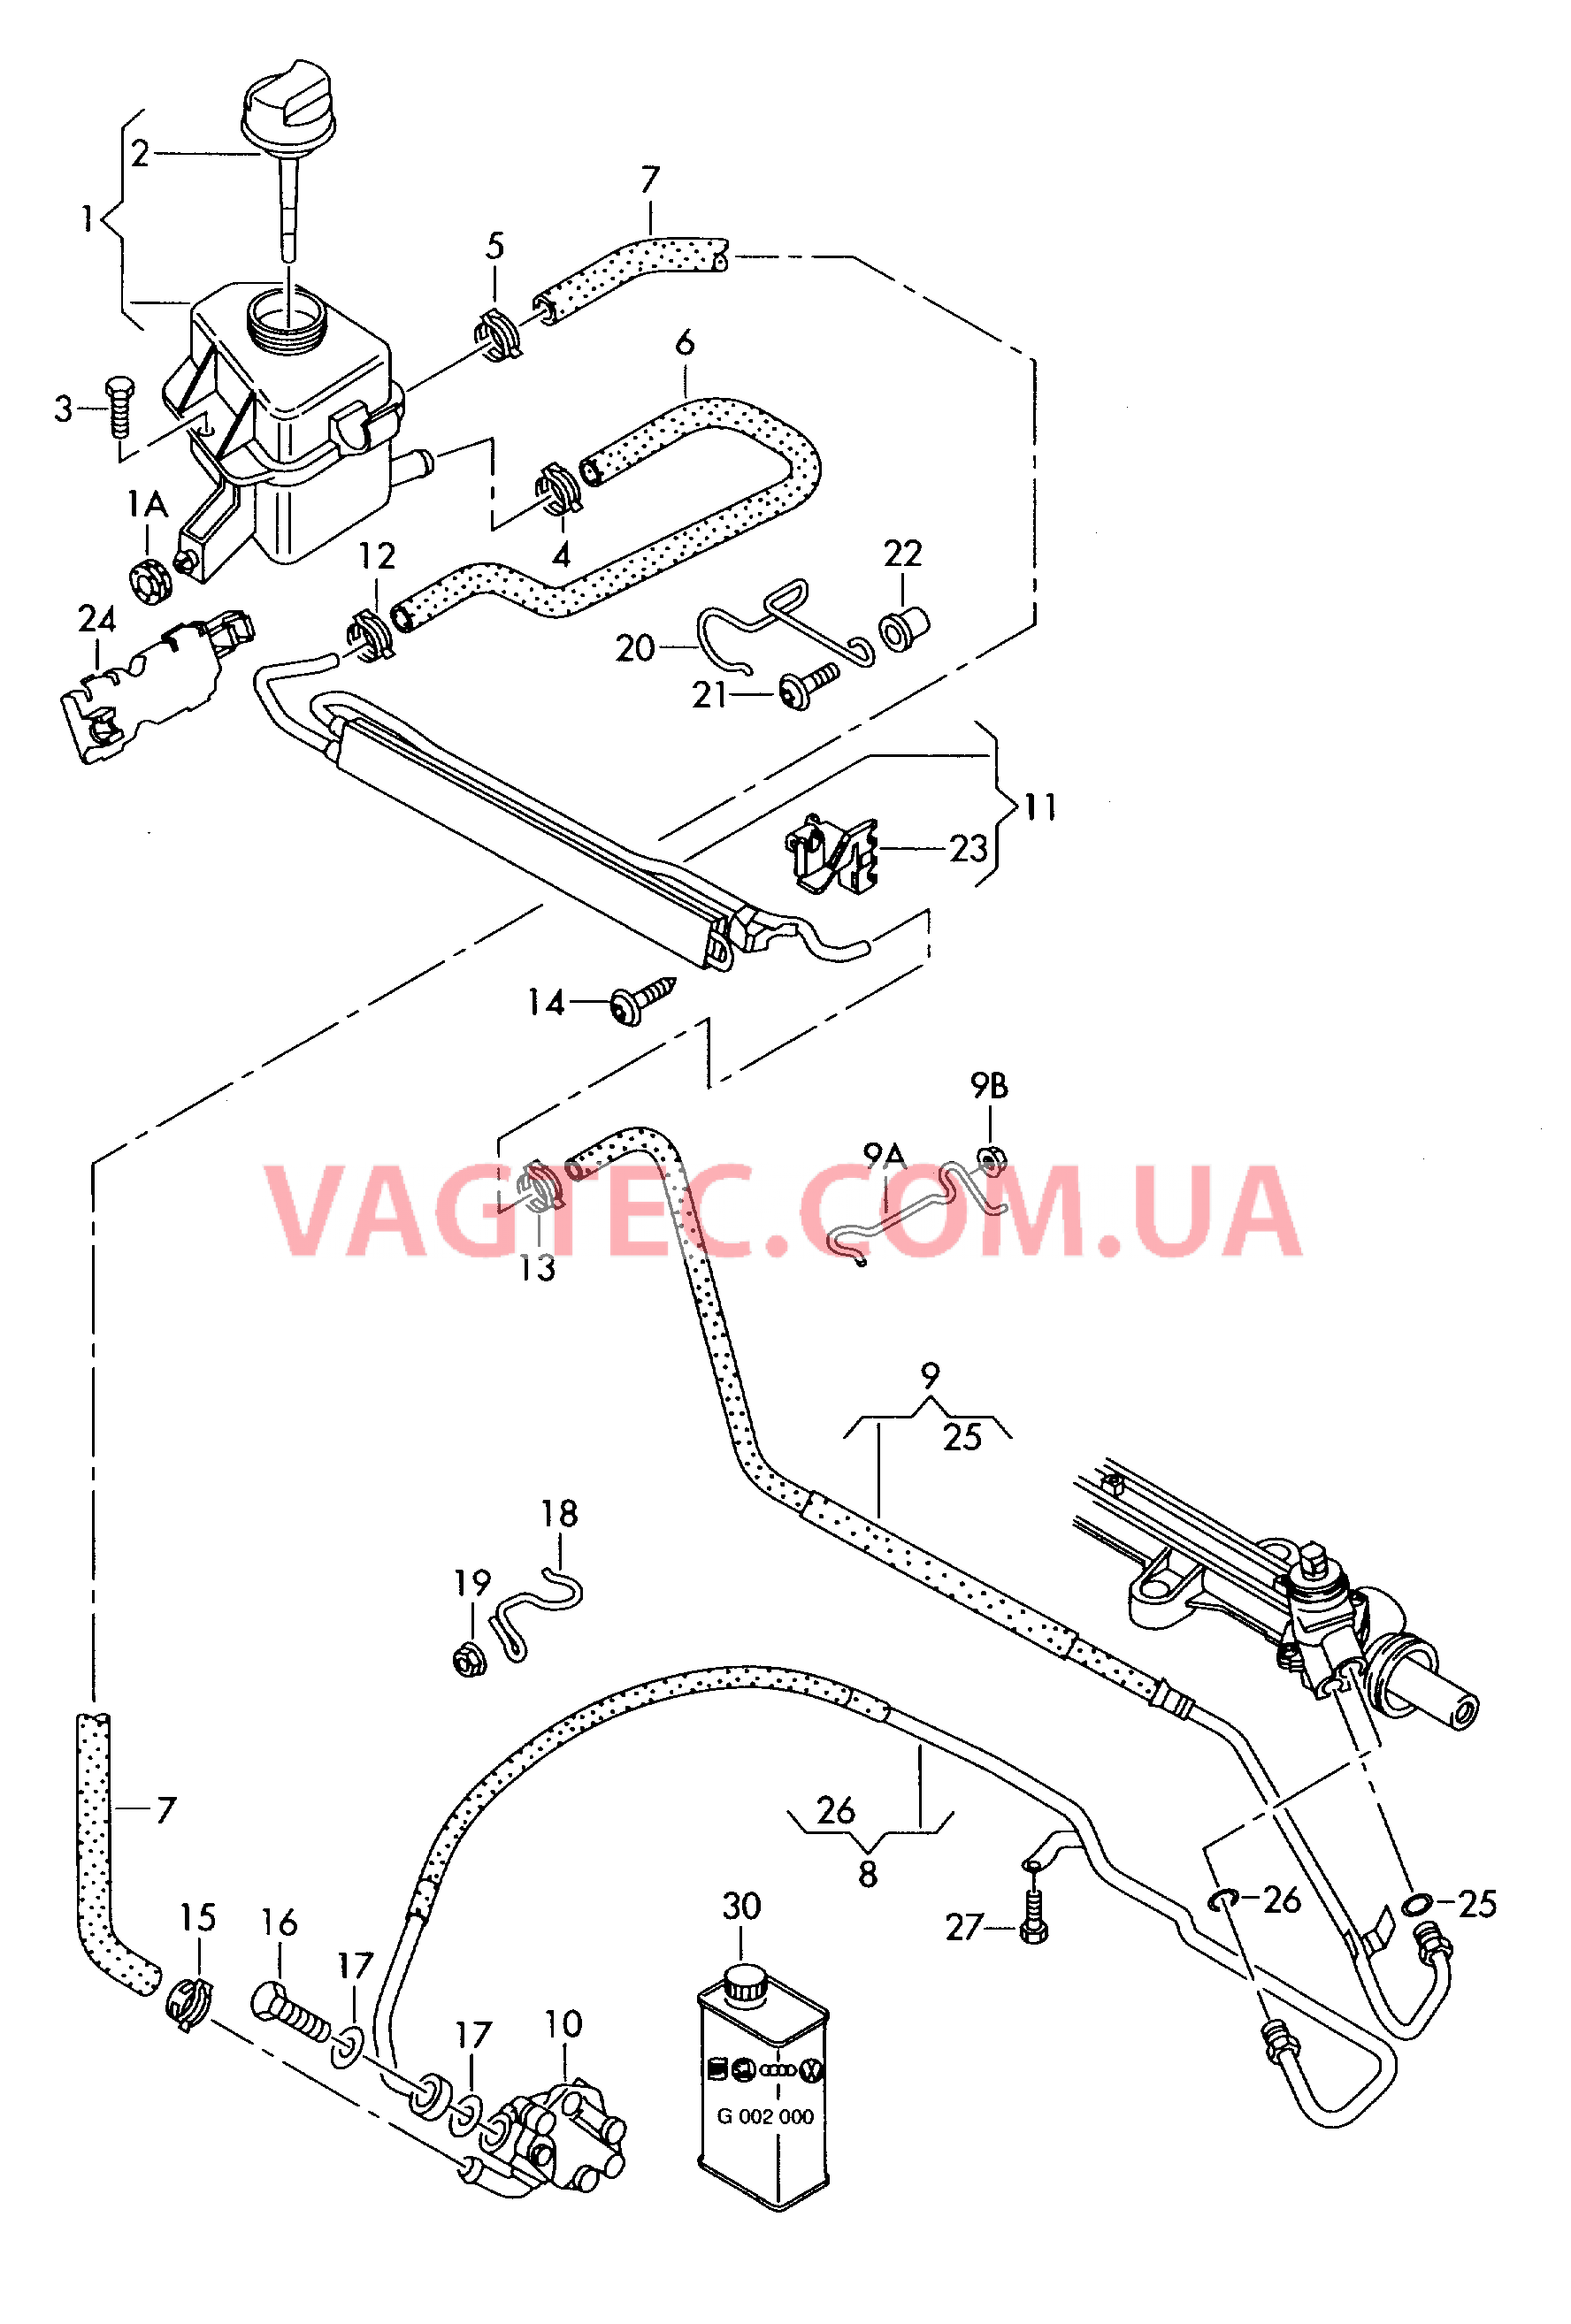 Масляный бачок с соединительными деталями, шлангами  для ГУРа  для VOLKSWAGEN Transporter 2010-1